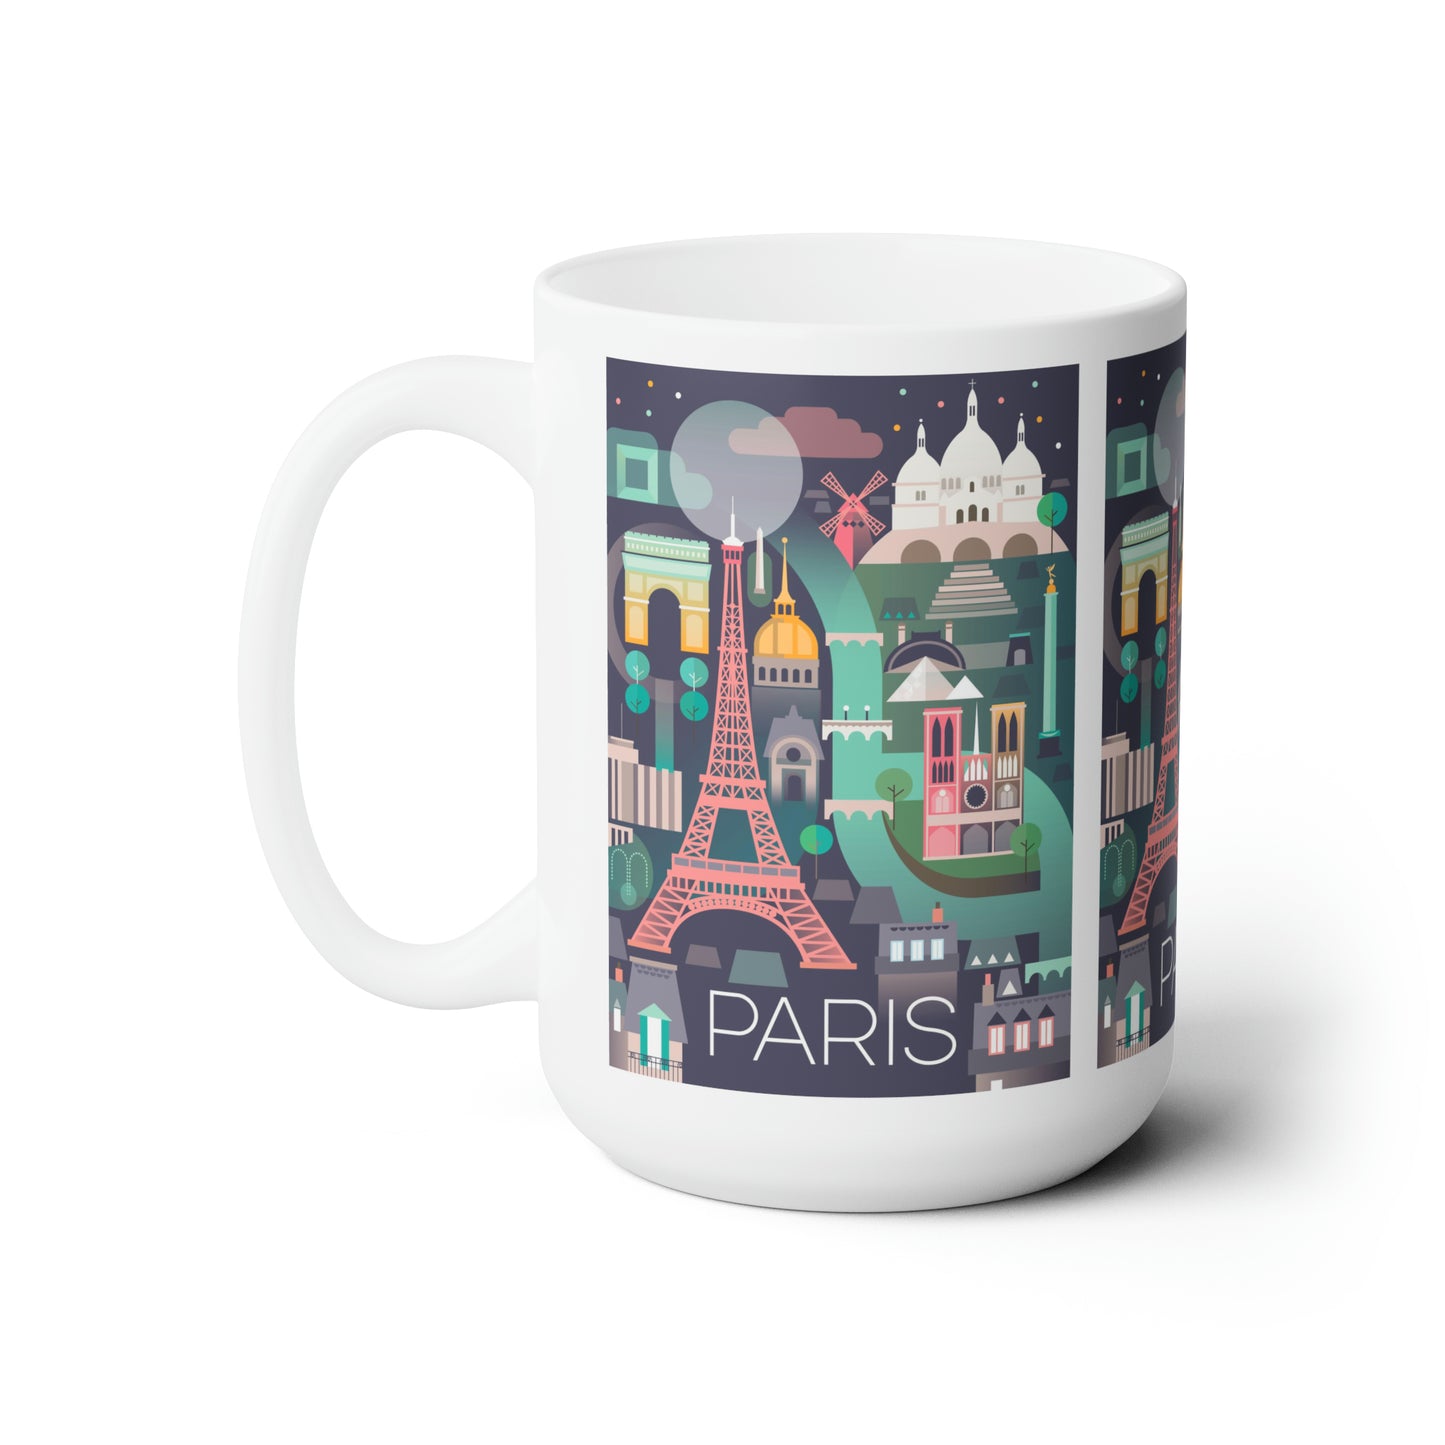 Paris Ceramic Mug 11oz or 15oz